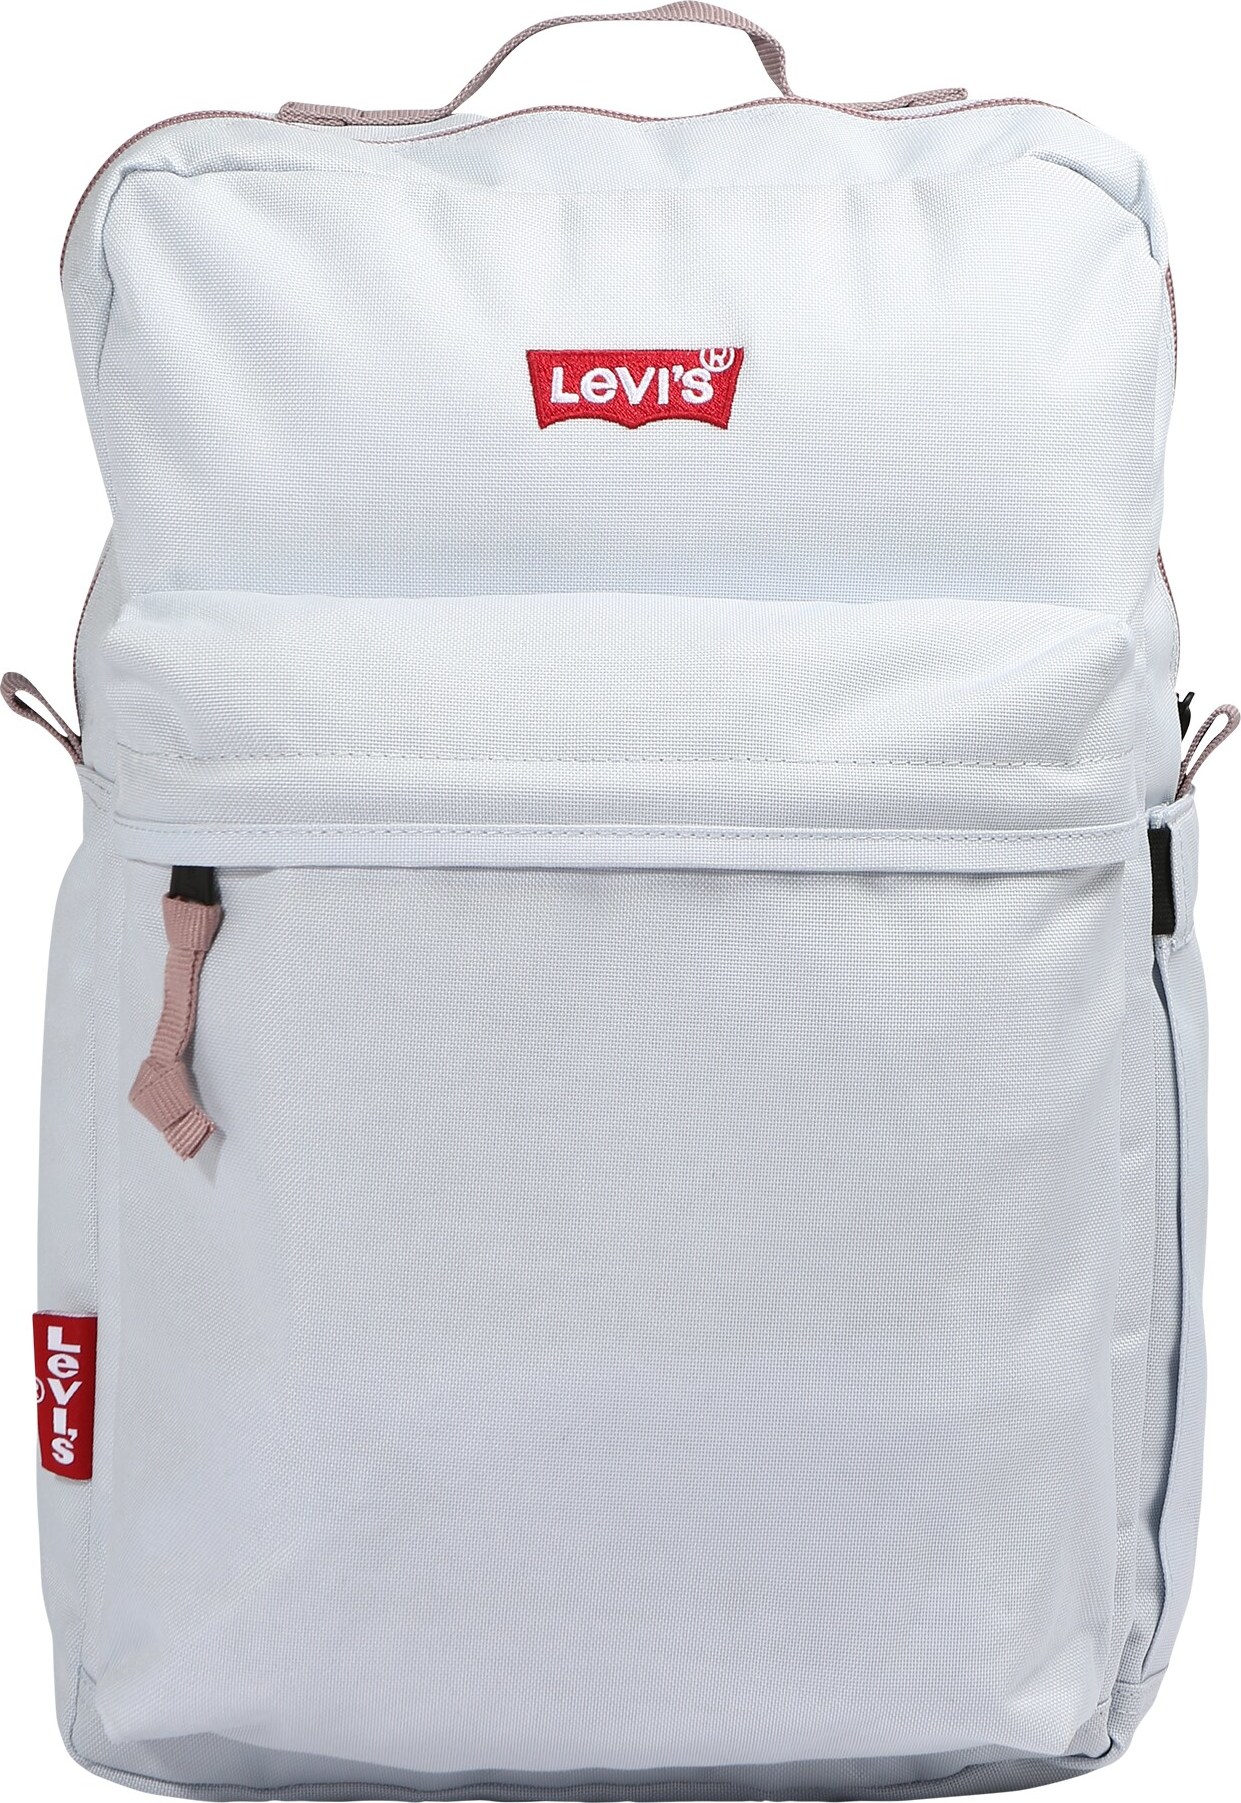 LEVI'S Rucksack 'Pack Standard Issue' světlemodrá / červená / bílá / pastelově růžová